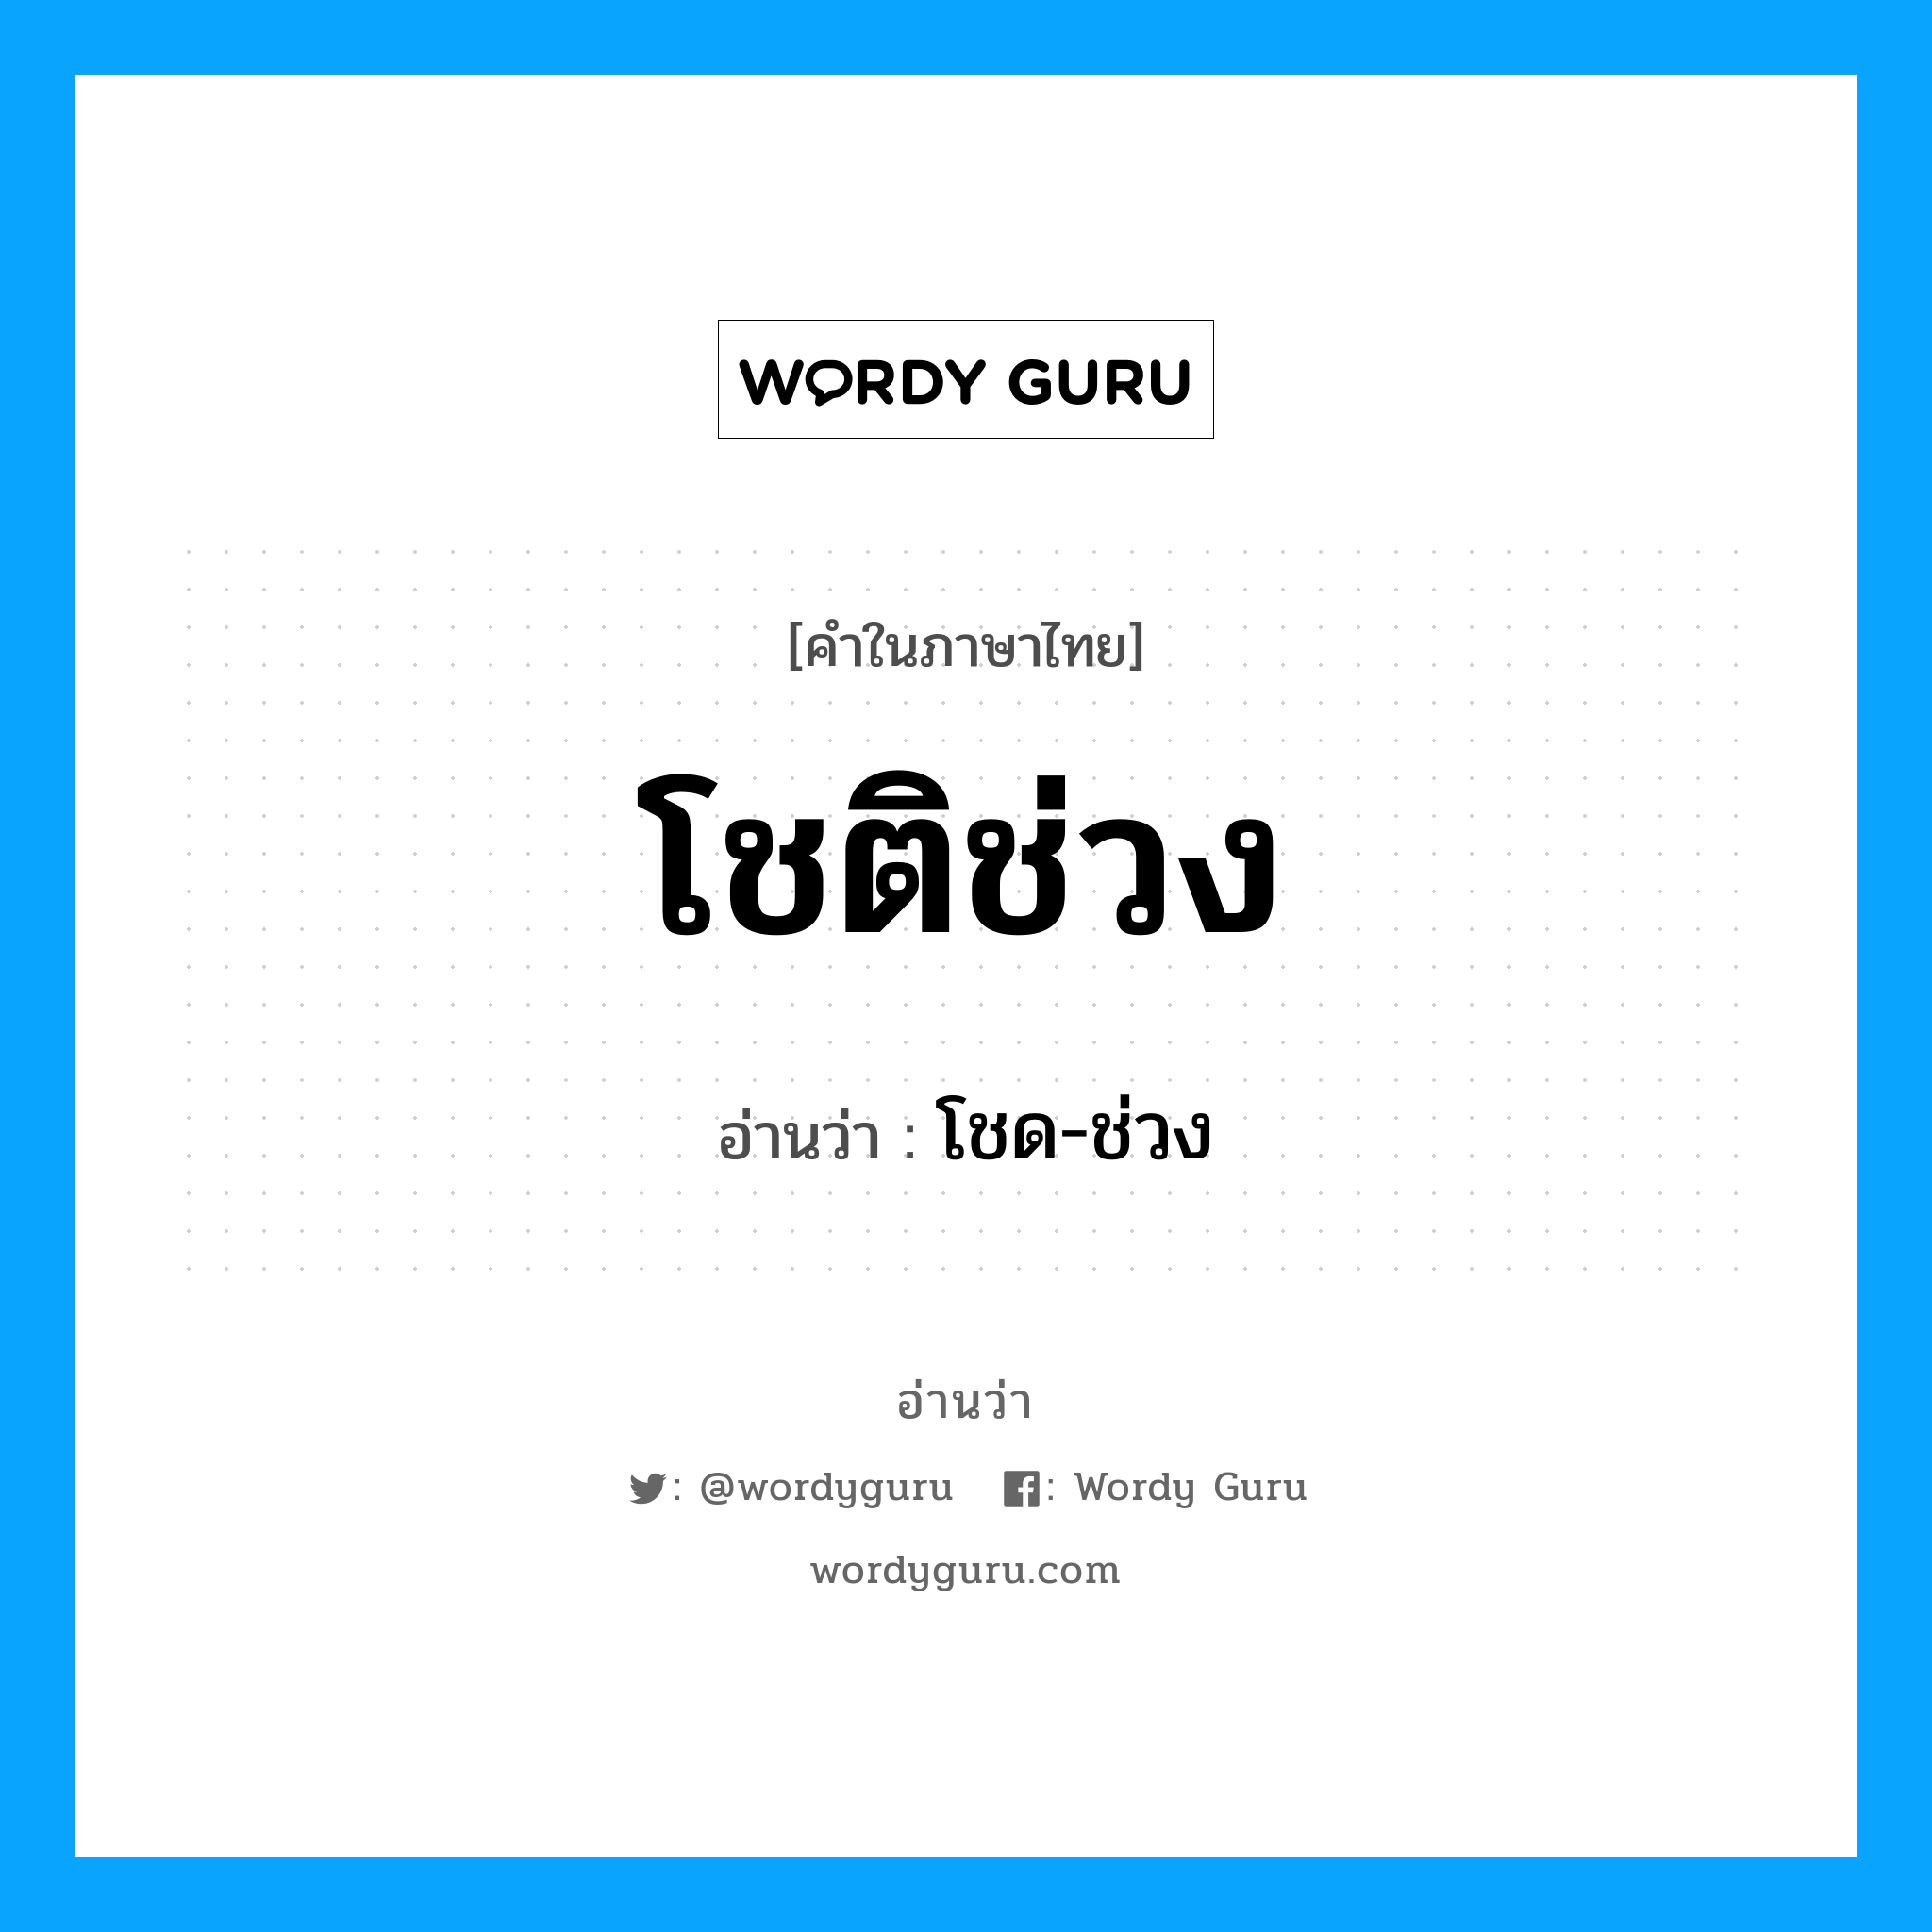 โชด-ช่วง เป็นคำอ่านของคำไหน?, คำในภาษาไทย โชด-ช่วง อ่านว่า โชติช่วง